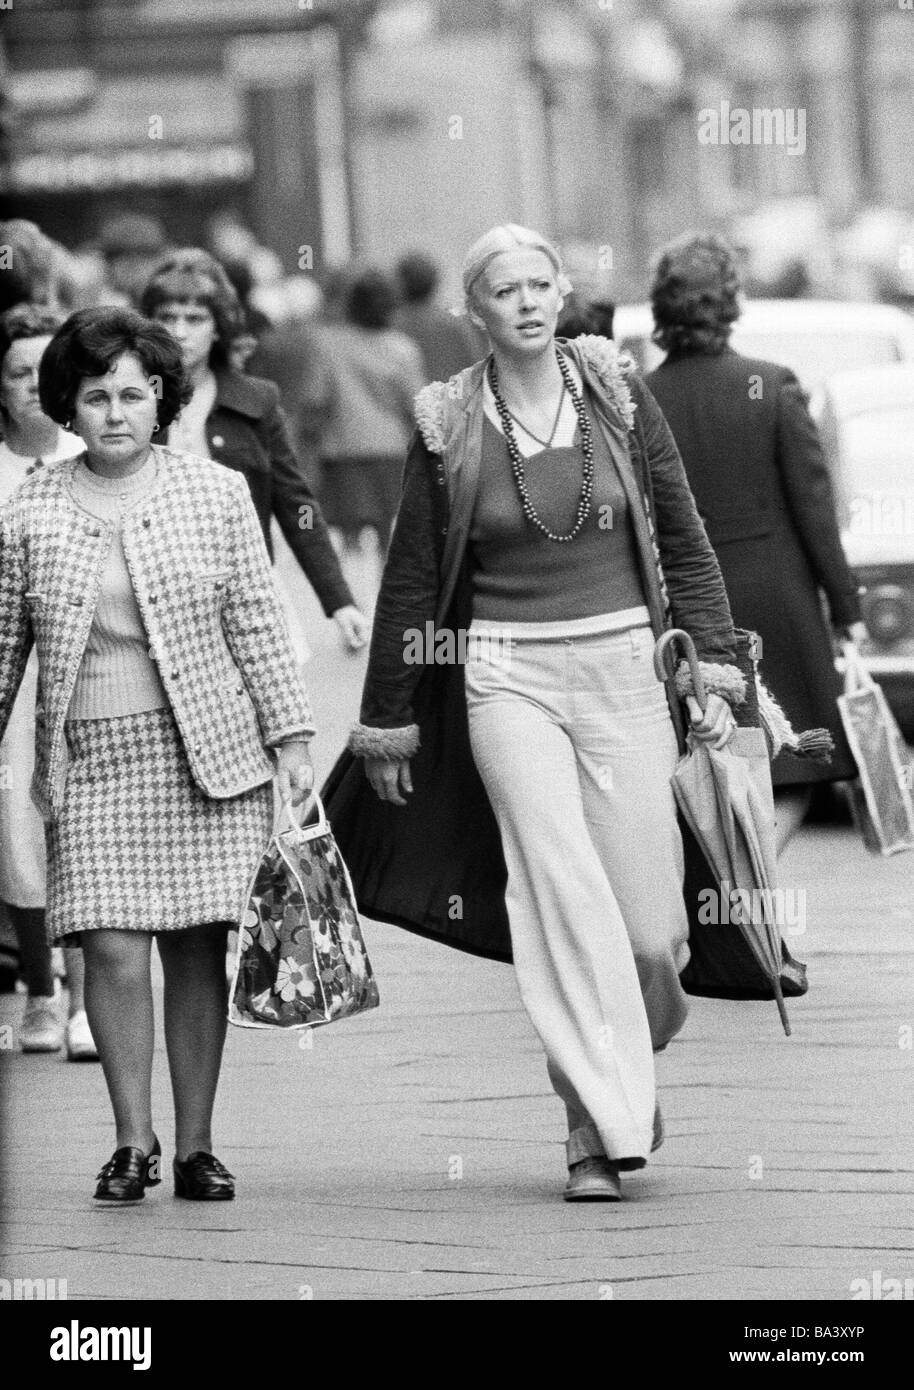 Deutschland germany woman frau mode fashion anzug suit 1970s 1970er -Fotos  und -Bildmaterial in hoher Auflösung – Alamy